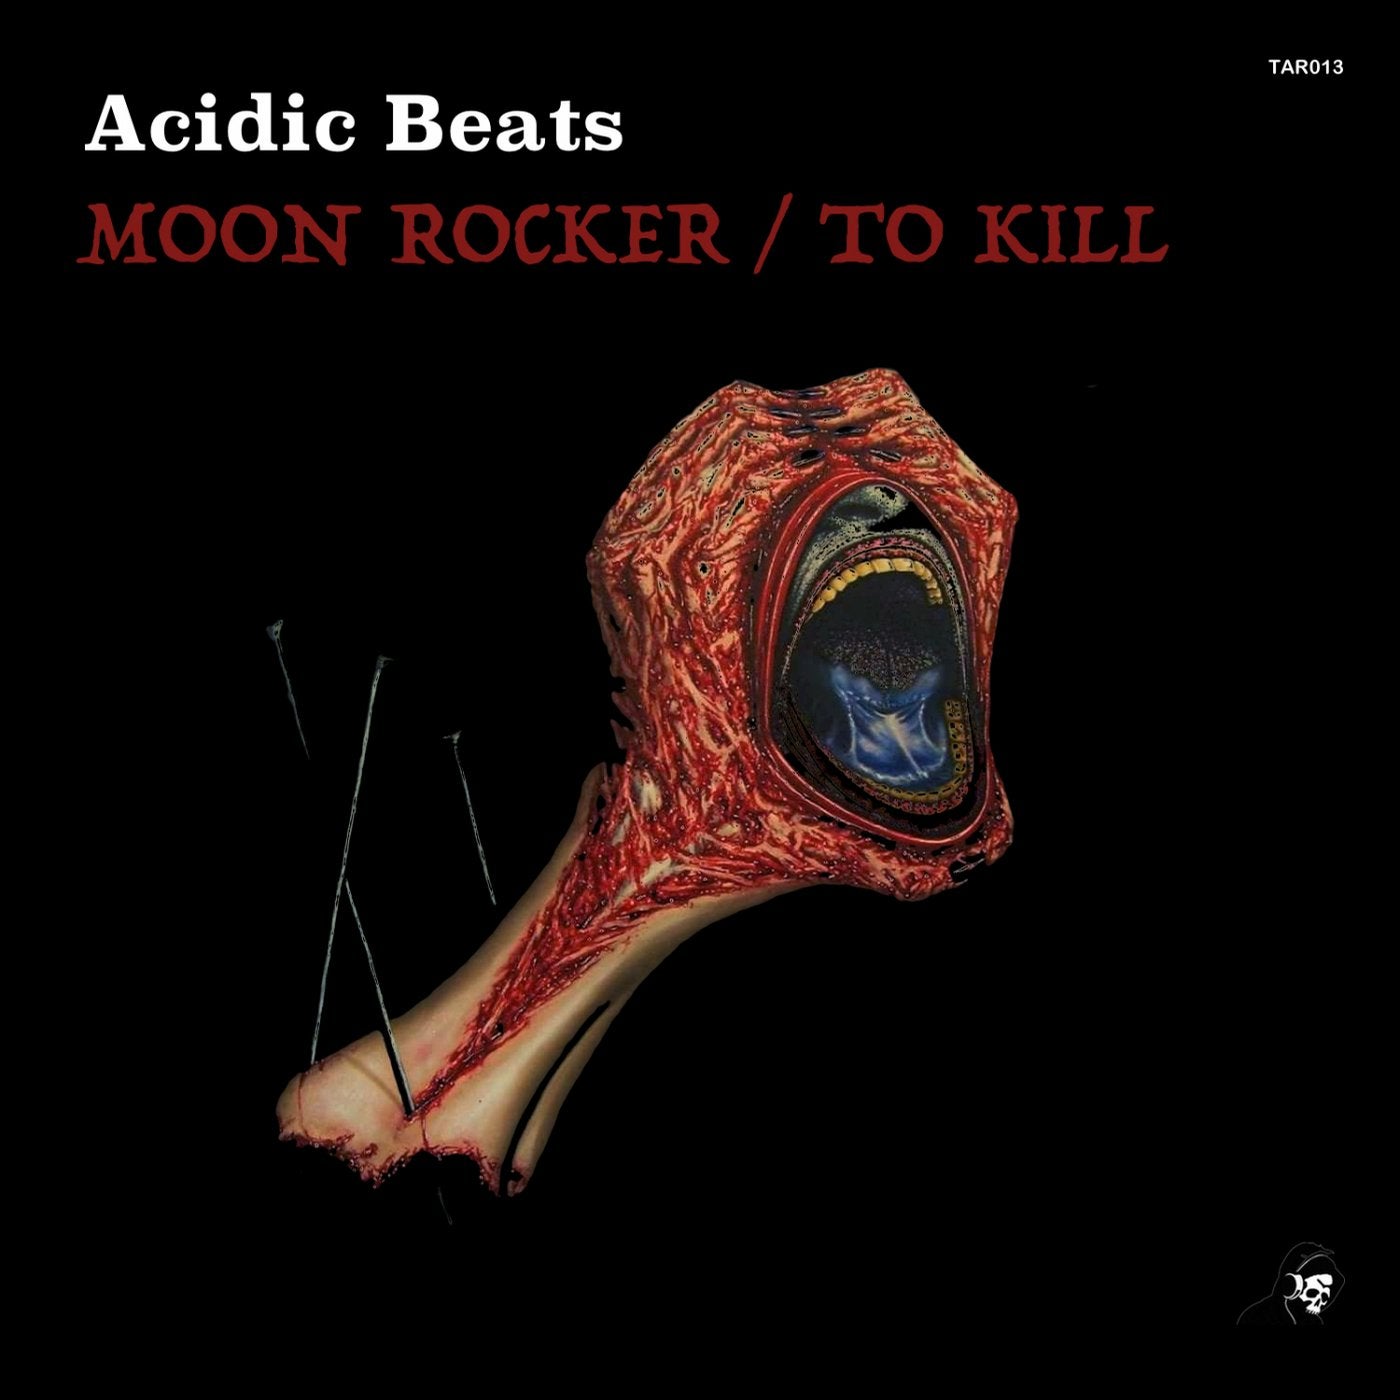 Moon Rocker / To Kill